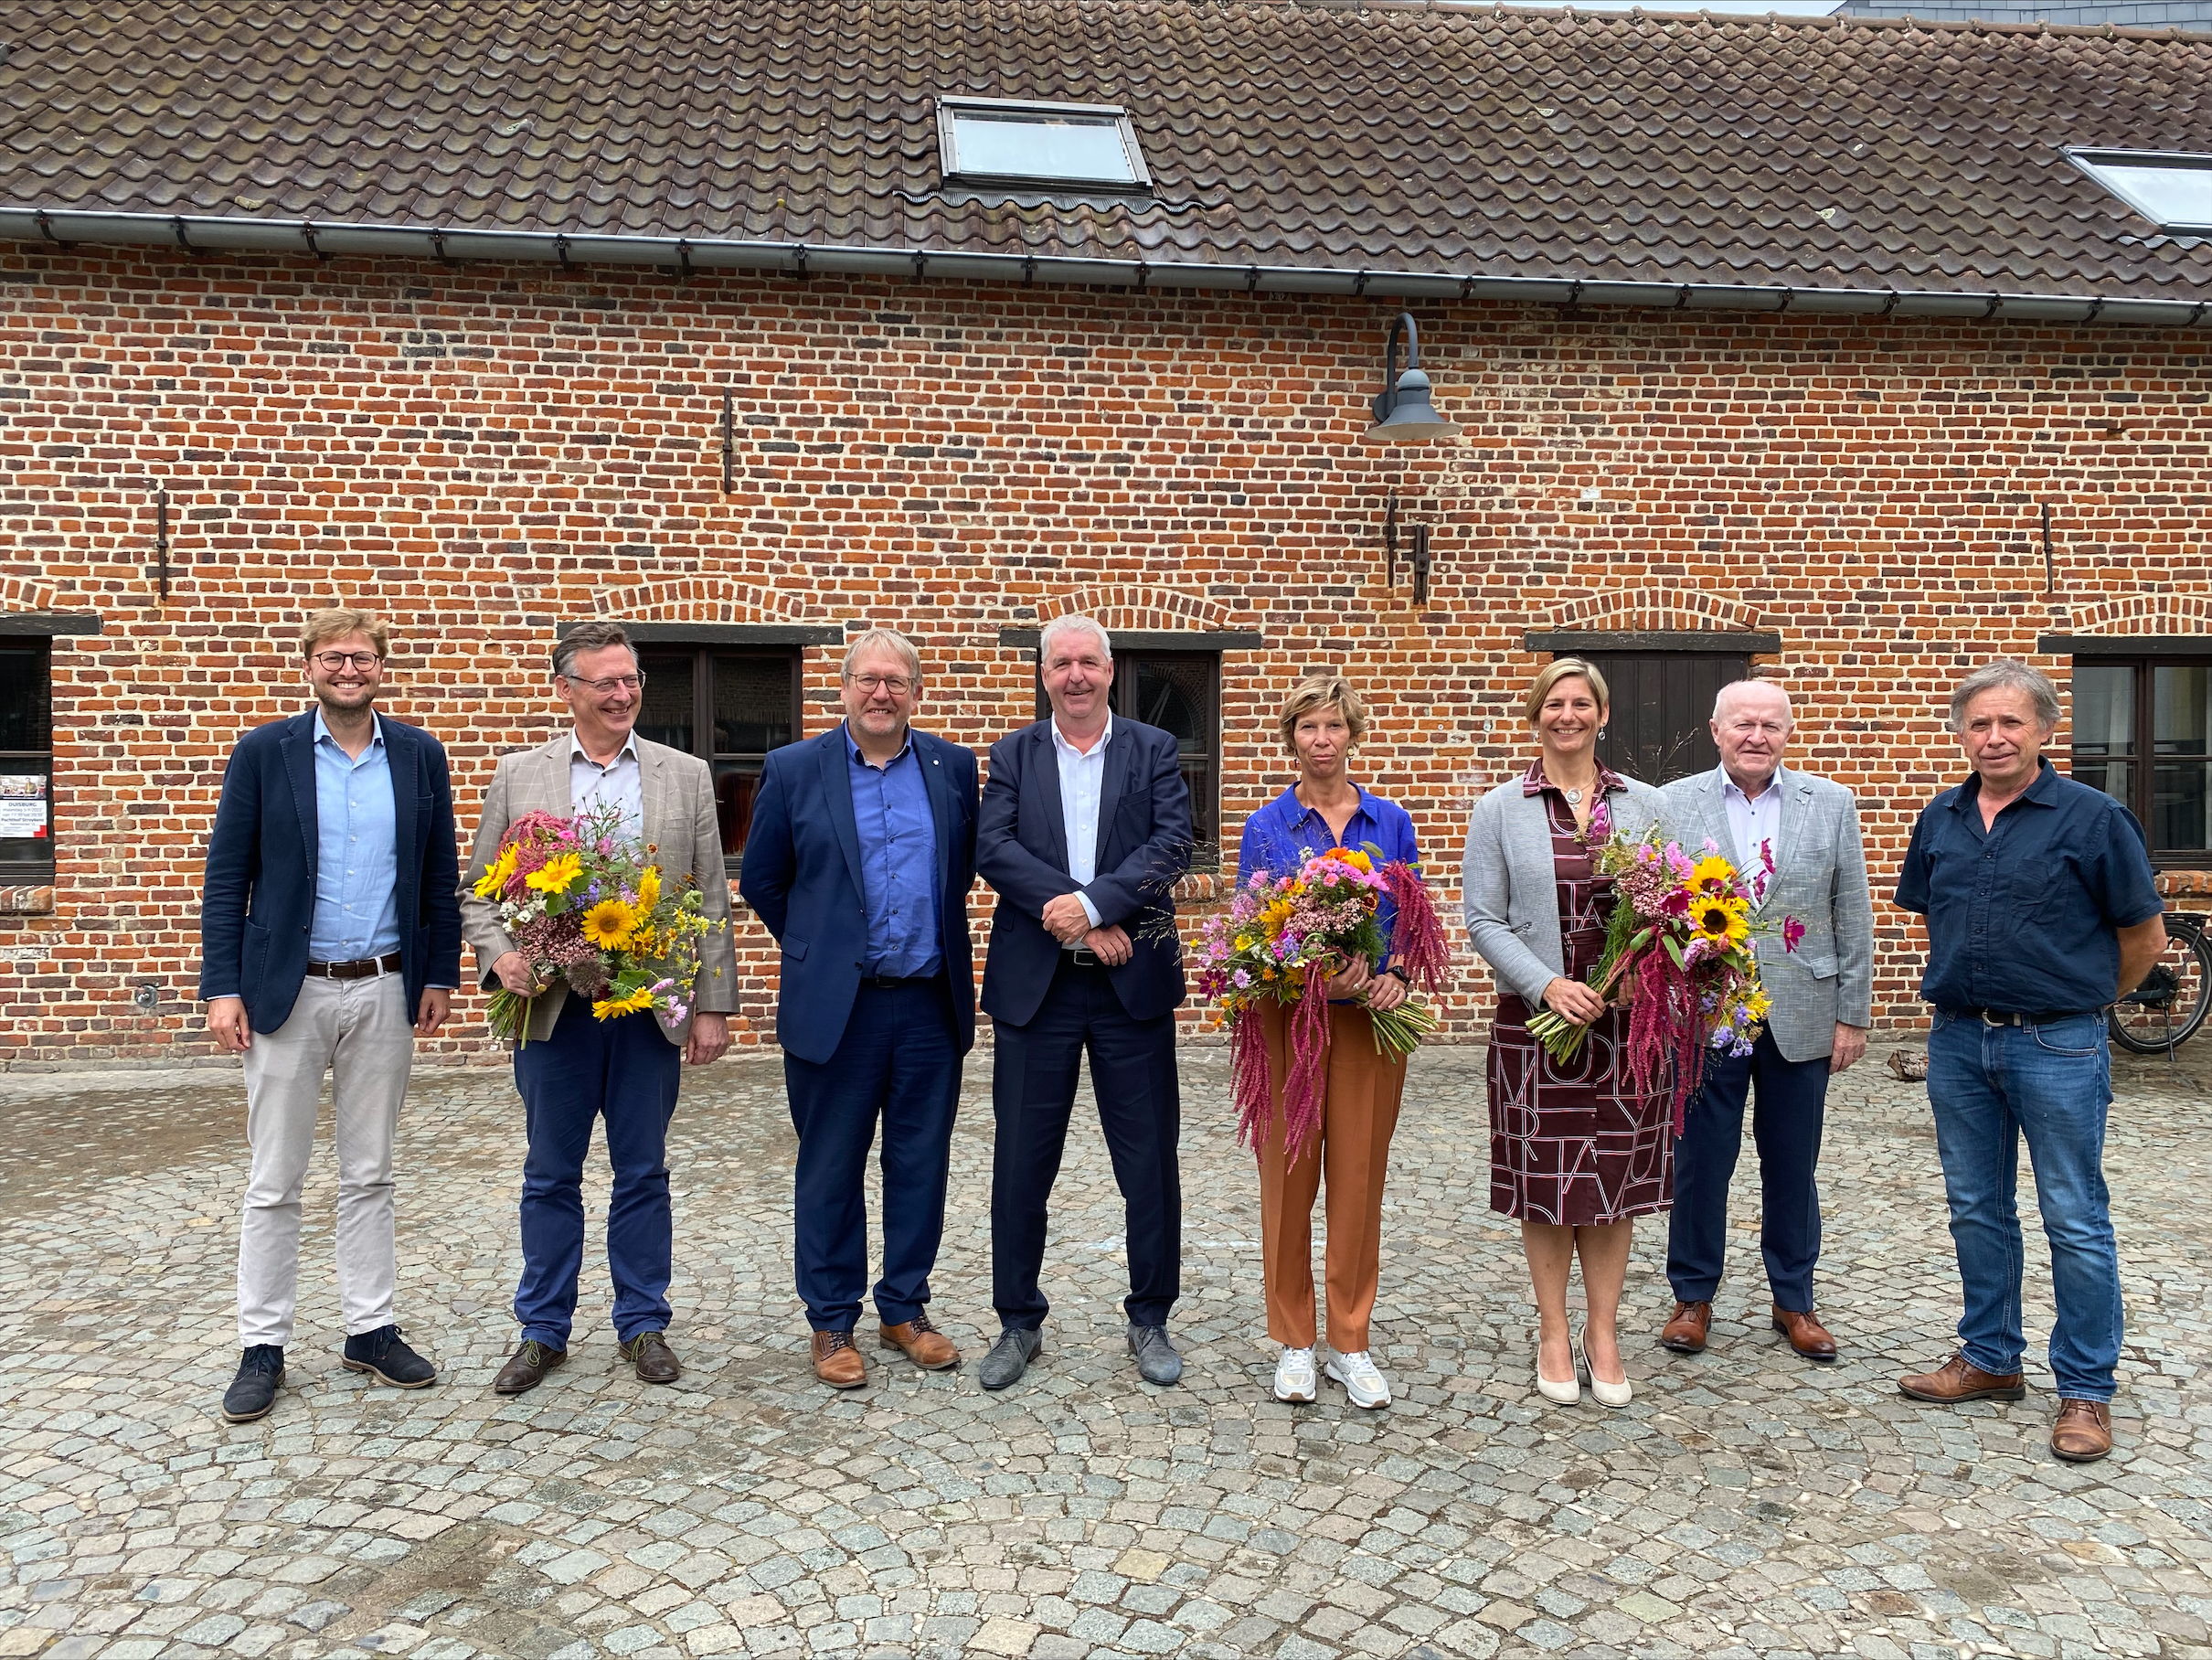 Op 8 september gaven vertegenwoordigers van de provincie Vlaams-Brabant en de gemeenten Sint-Genesius-Rode, Overijse en Tervuren het startschot voor een vernieuwd ruimtelijk beleid ivoor hun dorpskernen